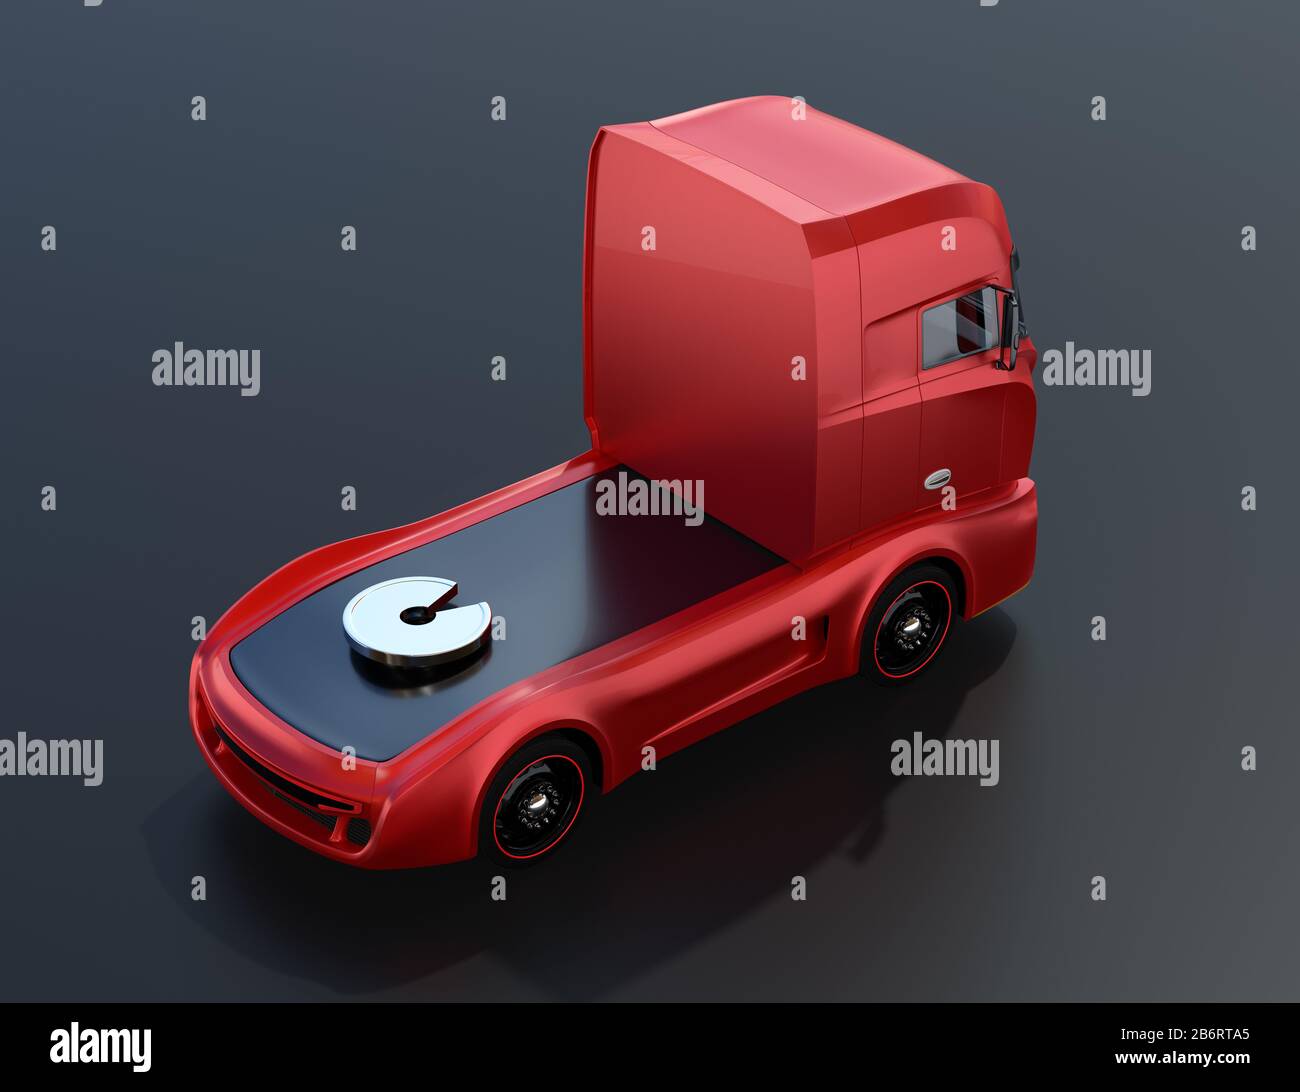 Vue arrière du modèle générique Camion électrique lourd rouge sur fond noir. Image de rendu 3D. Banque D'Images